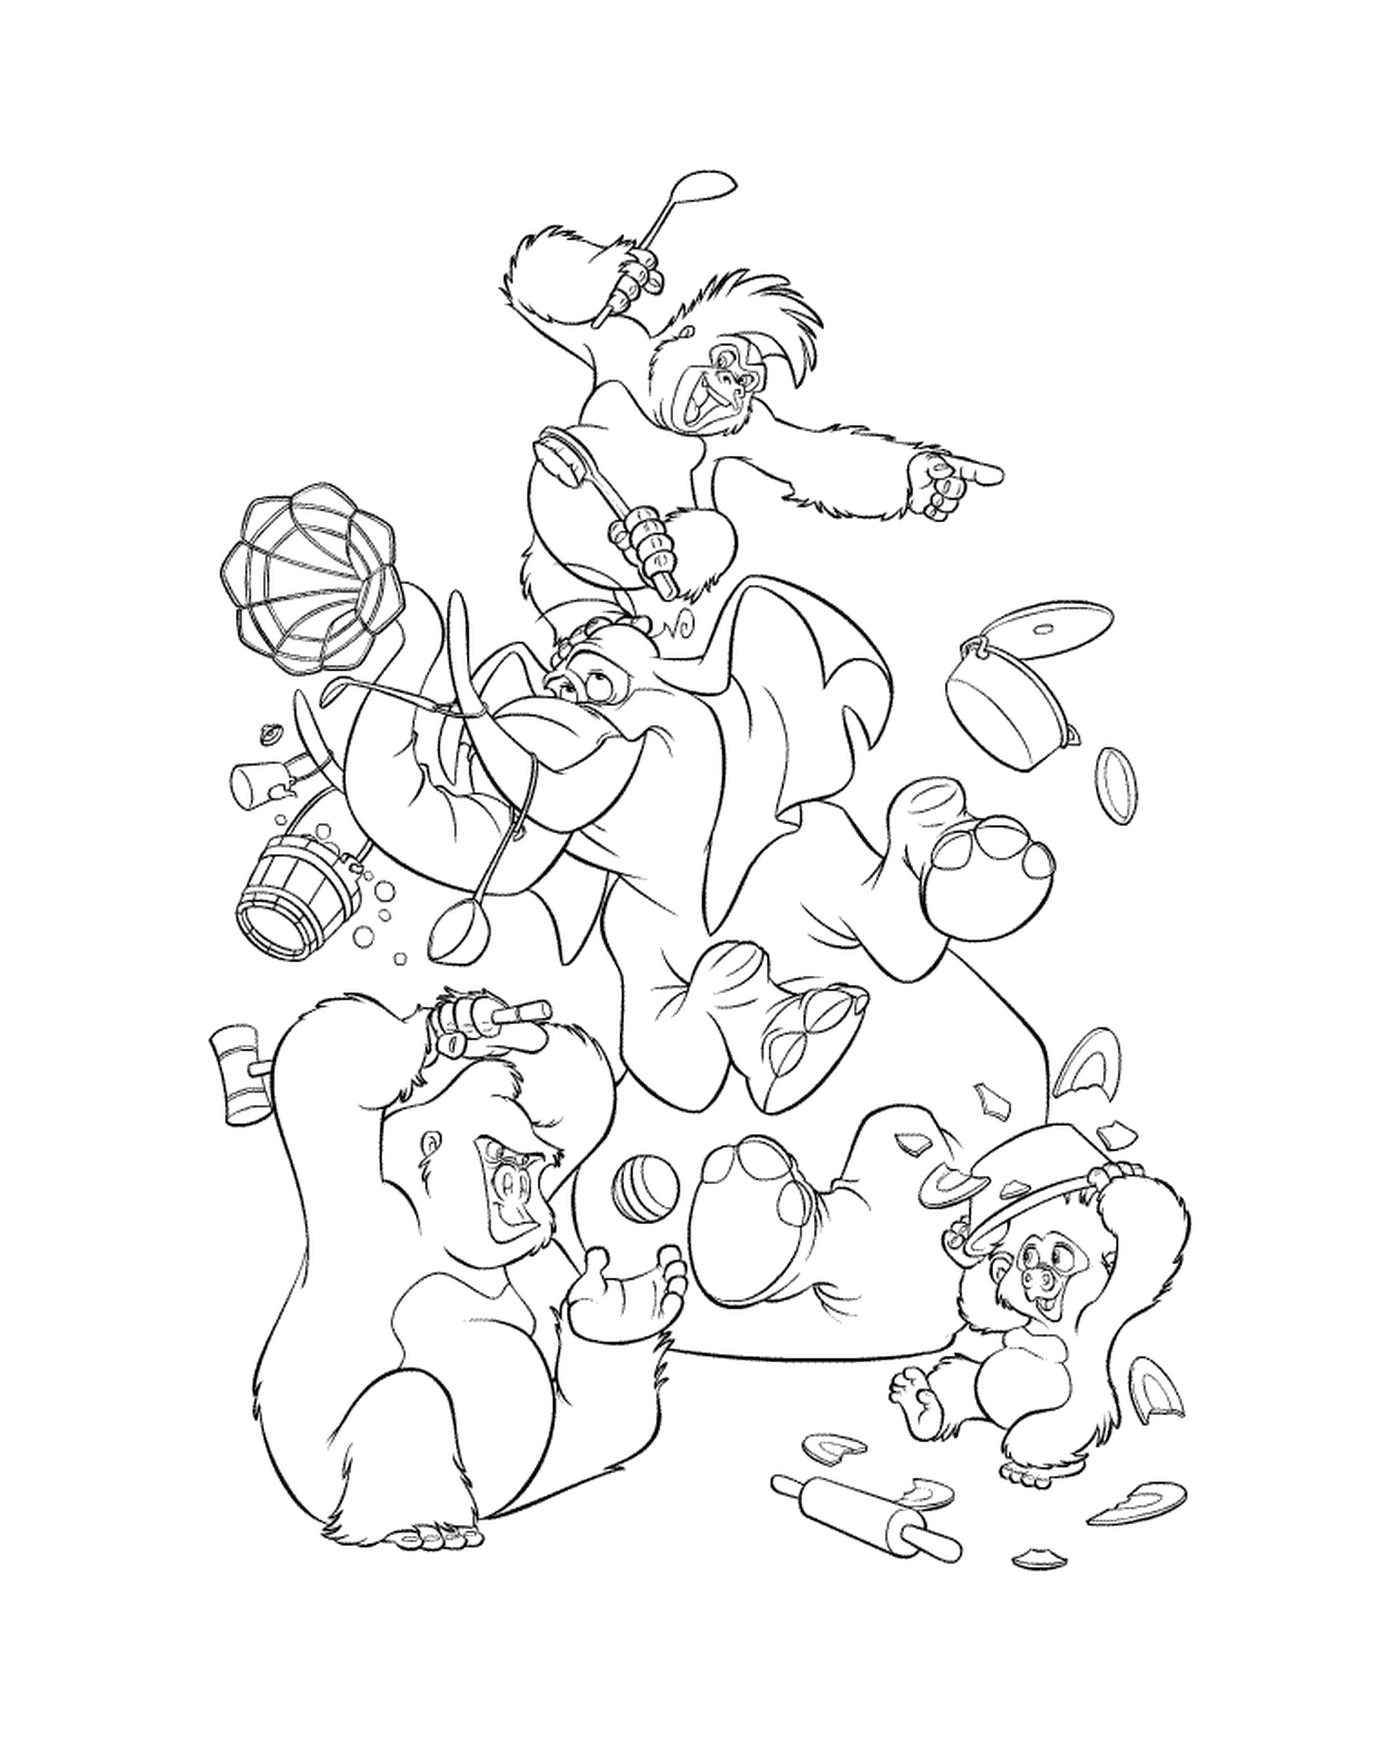  Grupo de urso brincando com um frisbee 